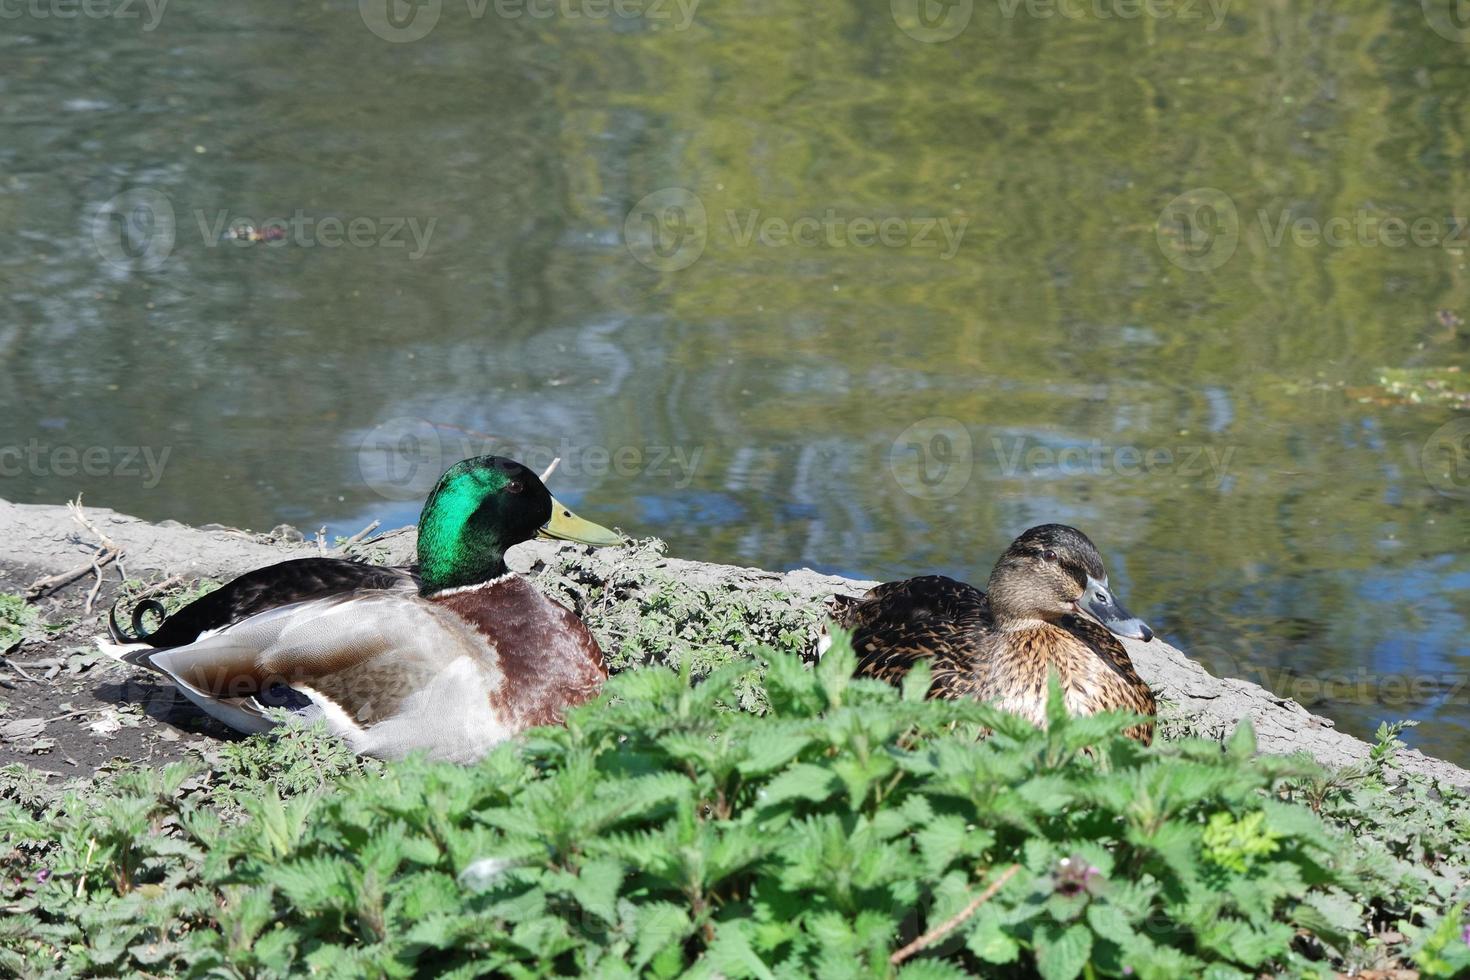 mignonne l'eau des oiseaux à le Lac de Publique parc de luton Angleterre Royaume-Uni photo